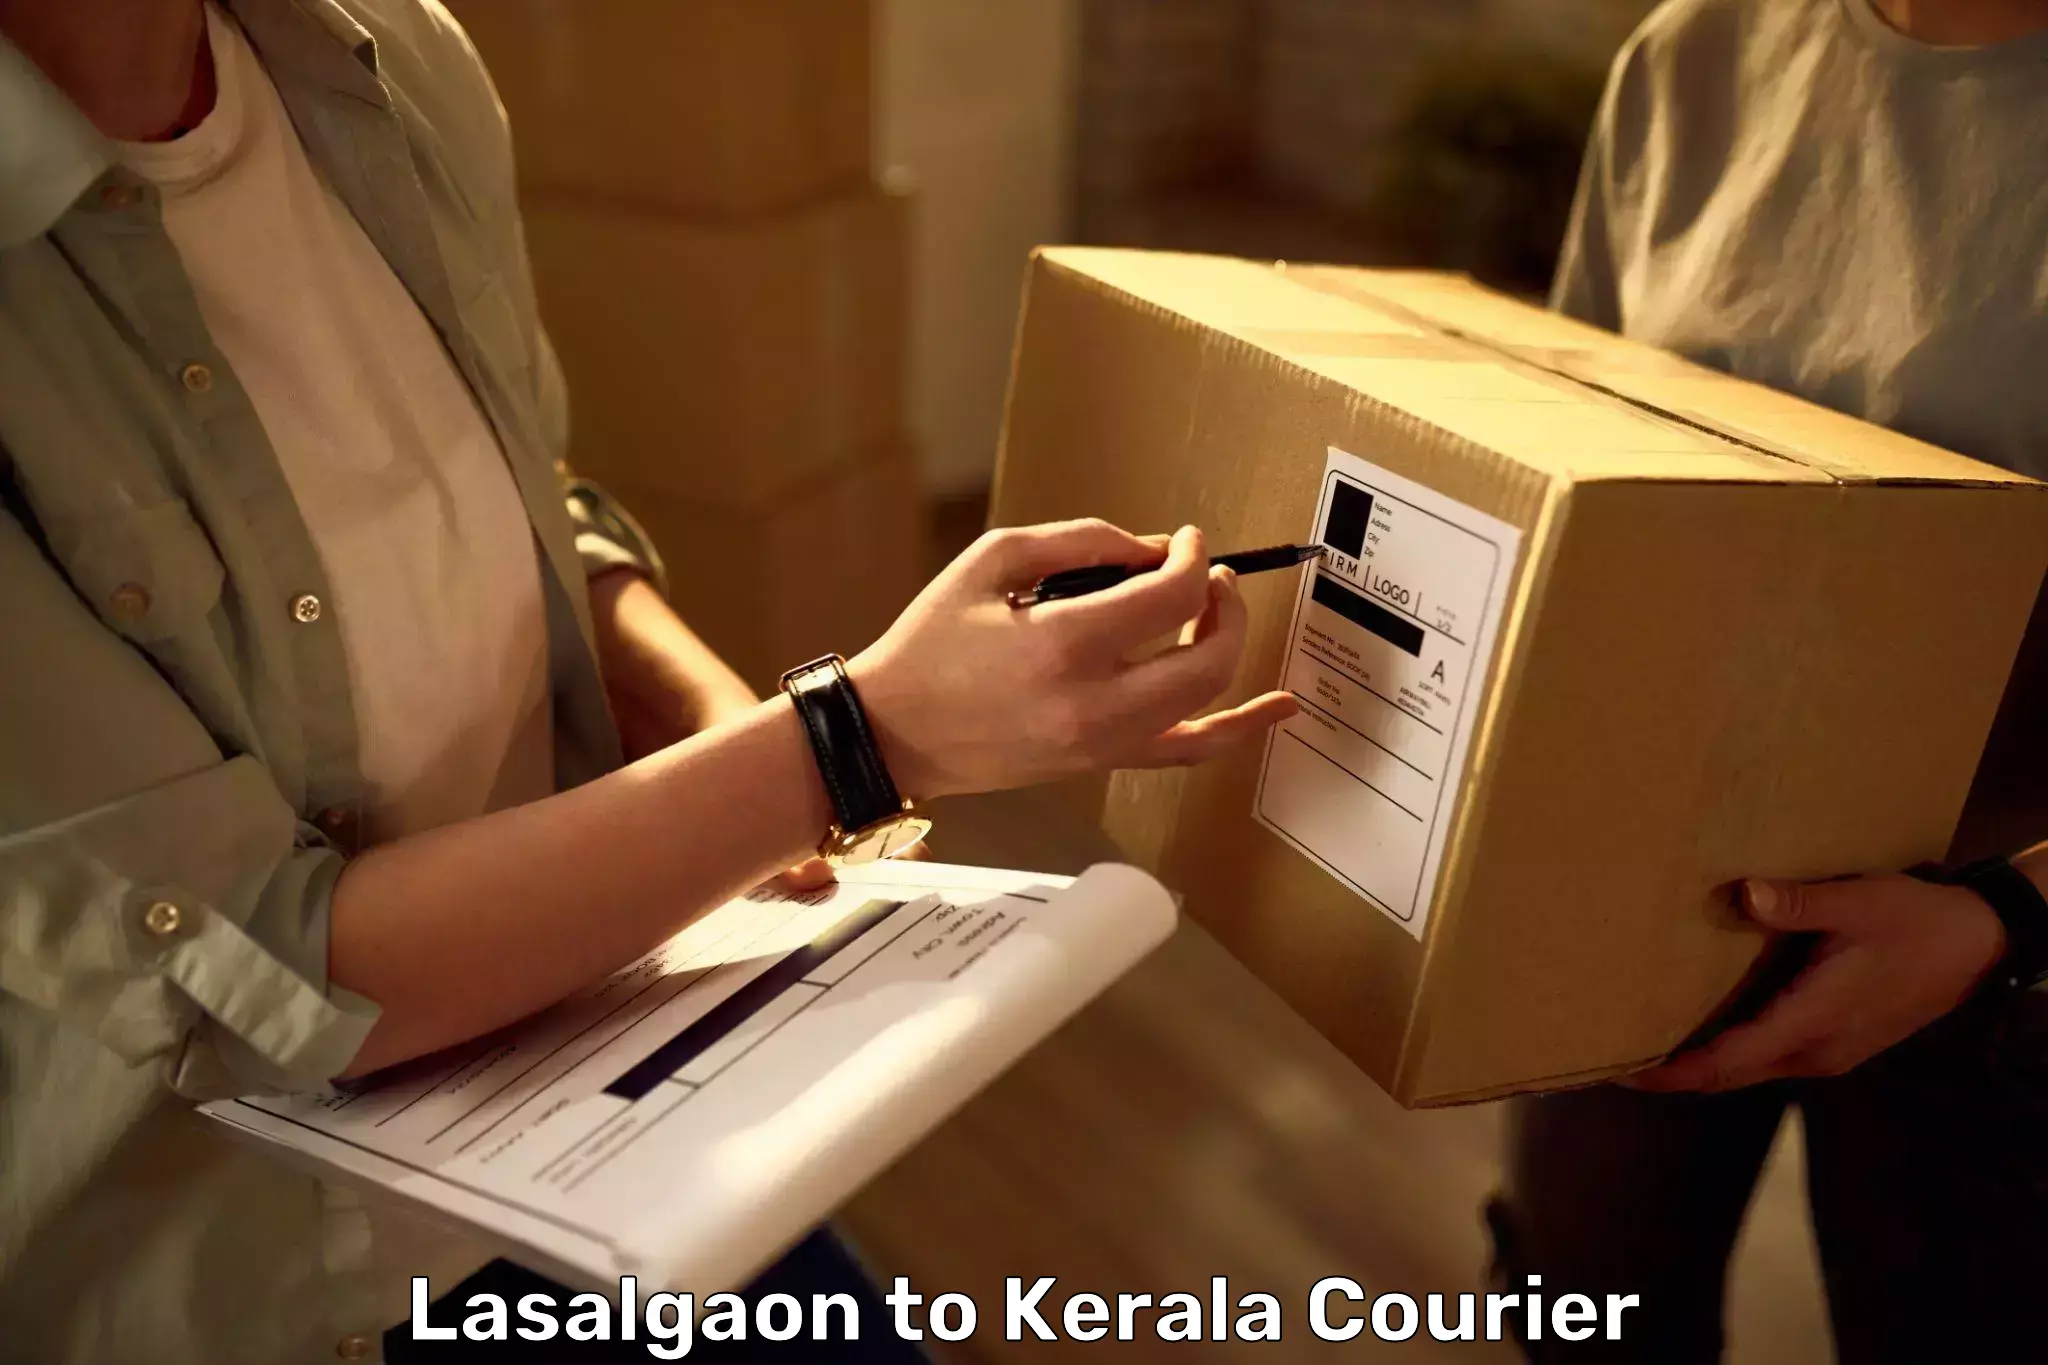 Baggage handling services Lasalgaon to Irinjalakuda